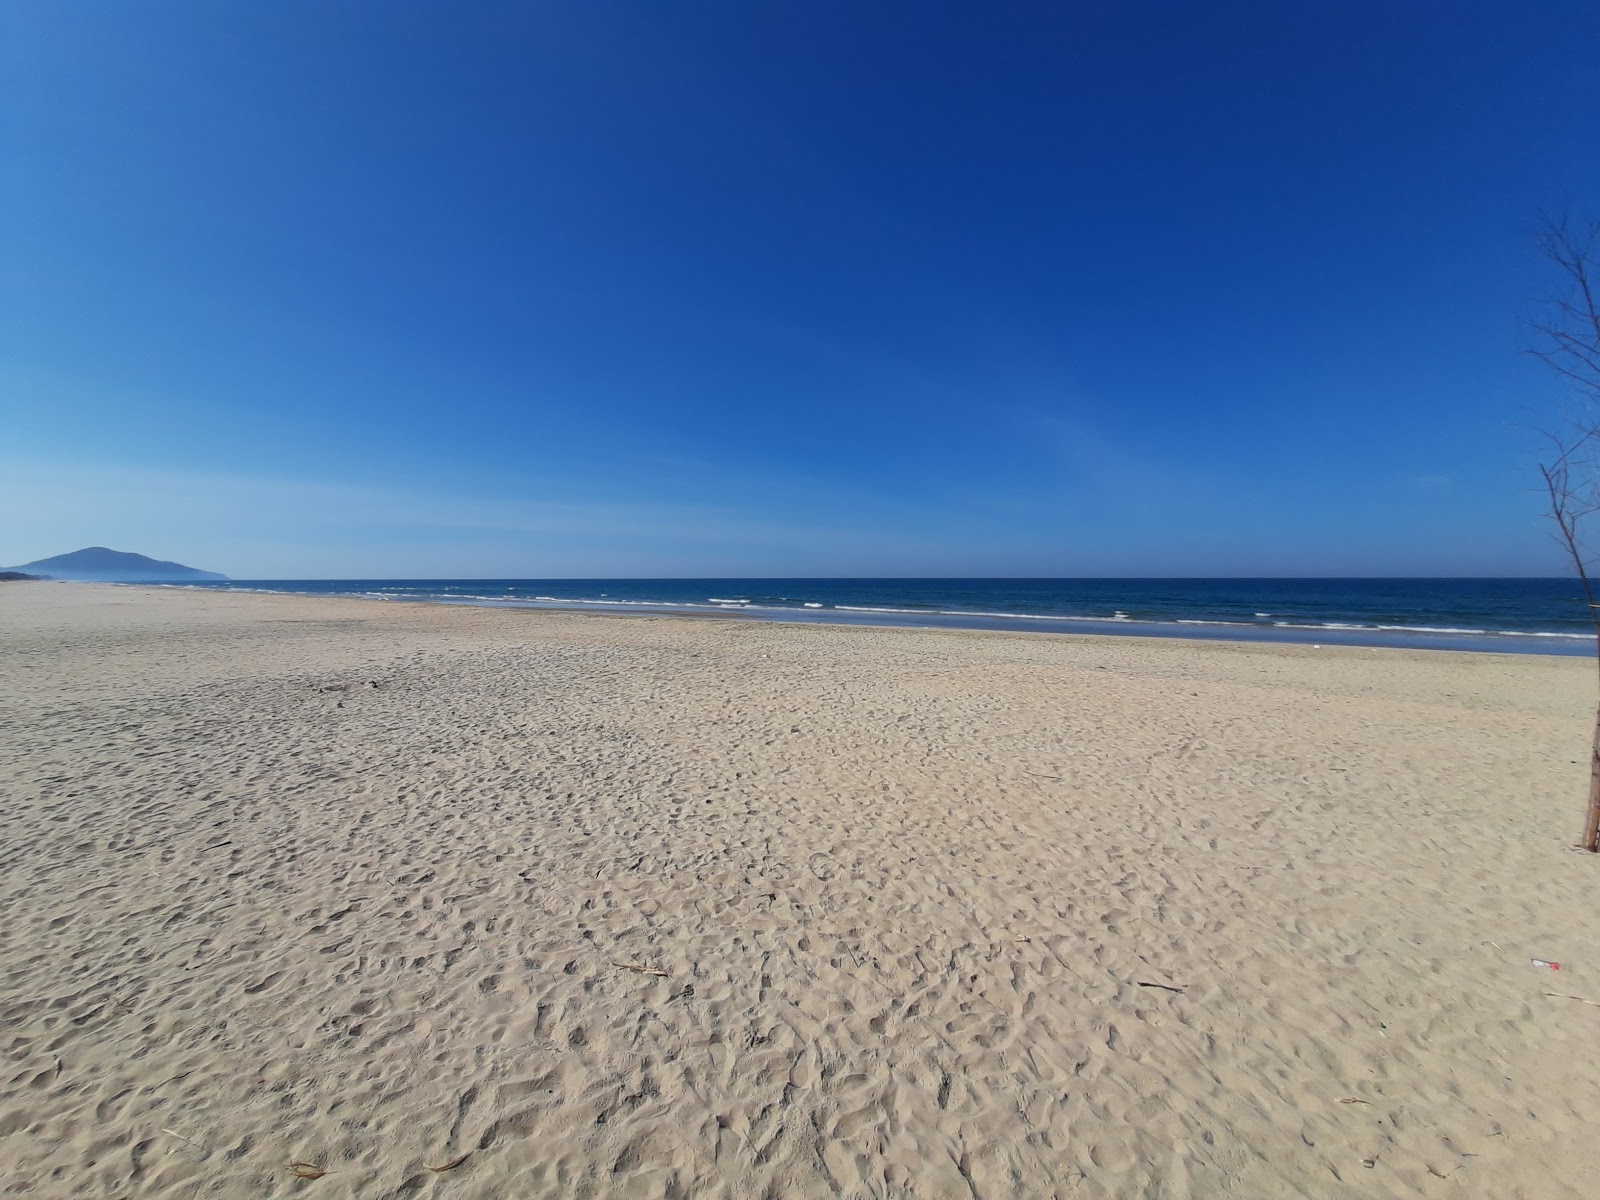 Foto de Lang Co Beach - lugar popular entre os apreciadores de relaxamento